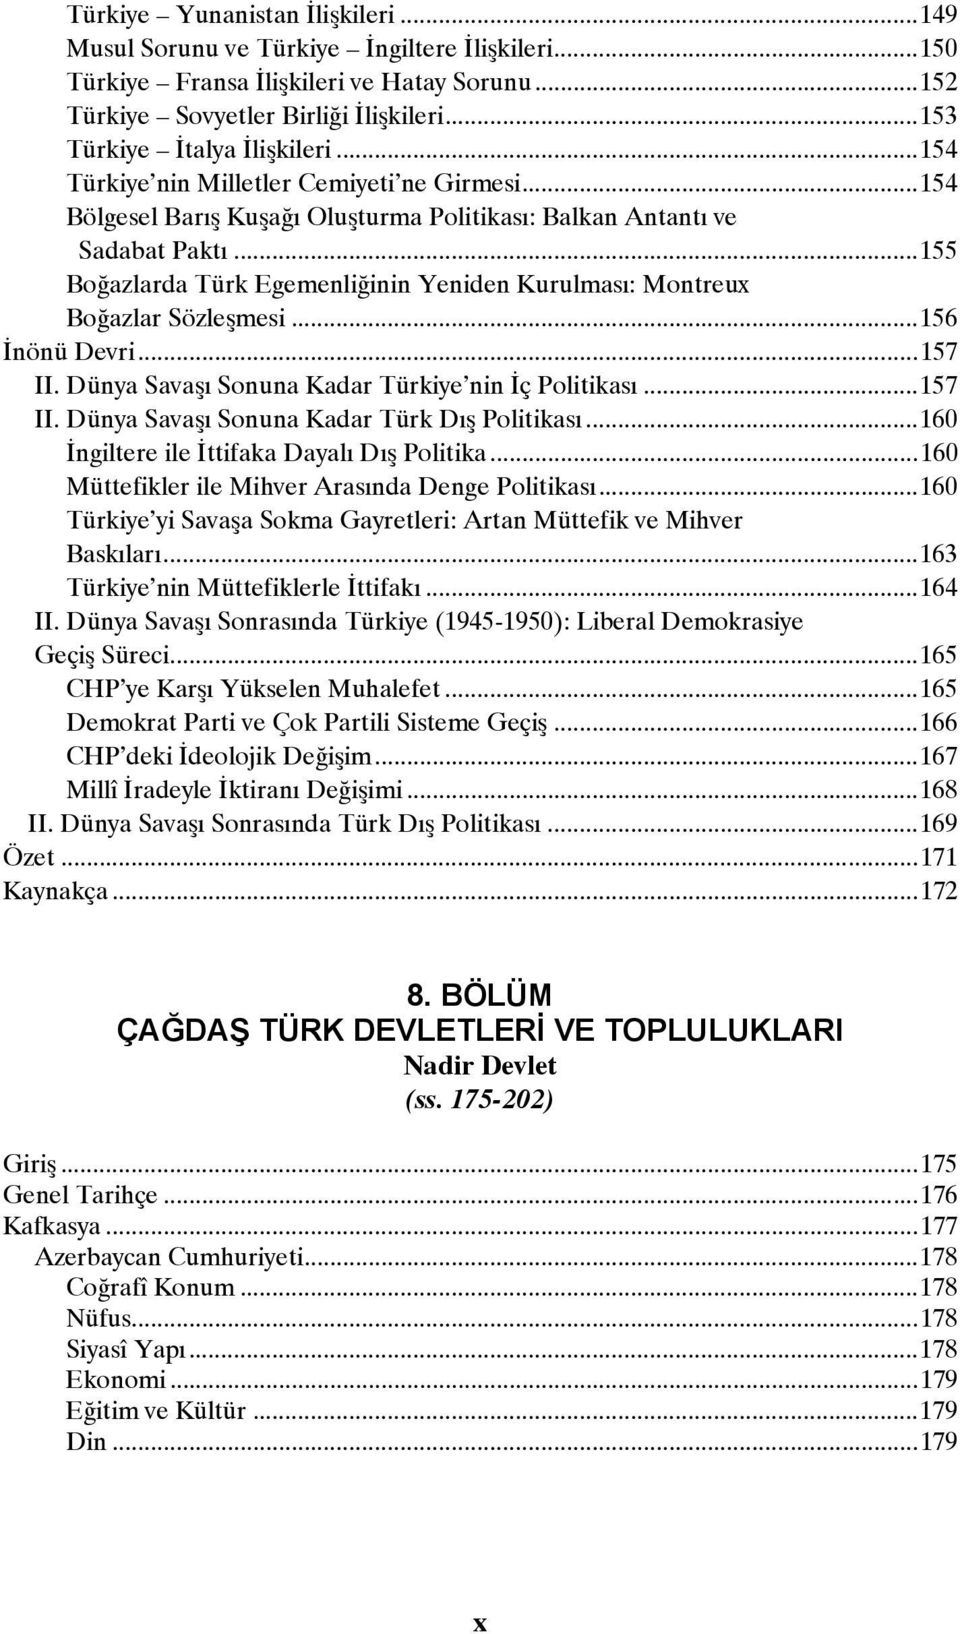 ..155 Boğazlarda Türk Egemenliğinin Yeniden Kurulması: Montreux Boğazlar Sözleşmesi...156 İnönü Devri...157 II. Dünya Savaşı Sonuna Kadar Türkiye nin İç Politikası...157 II. Dünya Savaşı Sonuna Kadar Türk Dış Politikası.